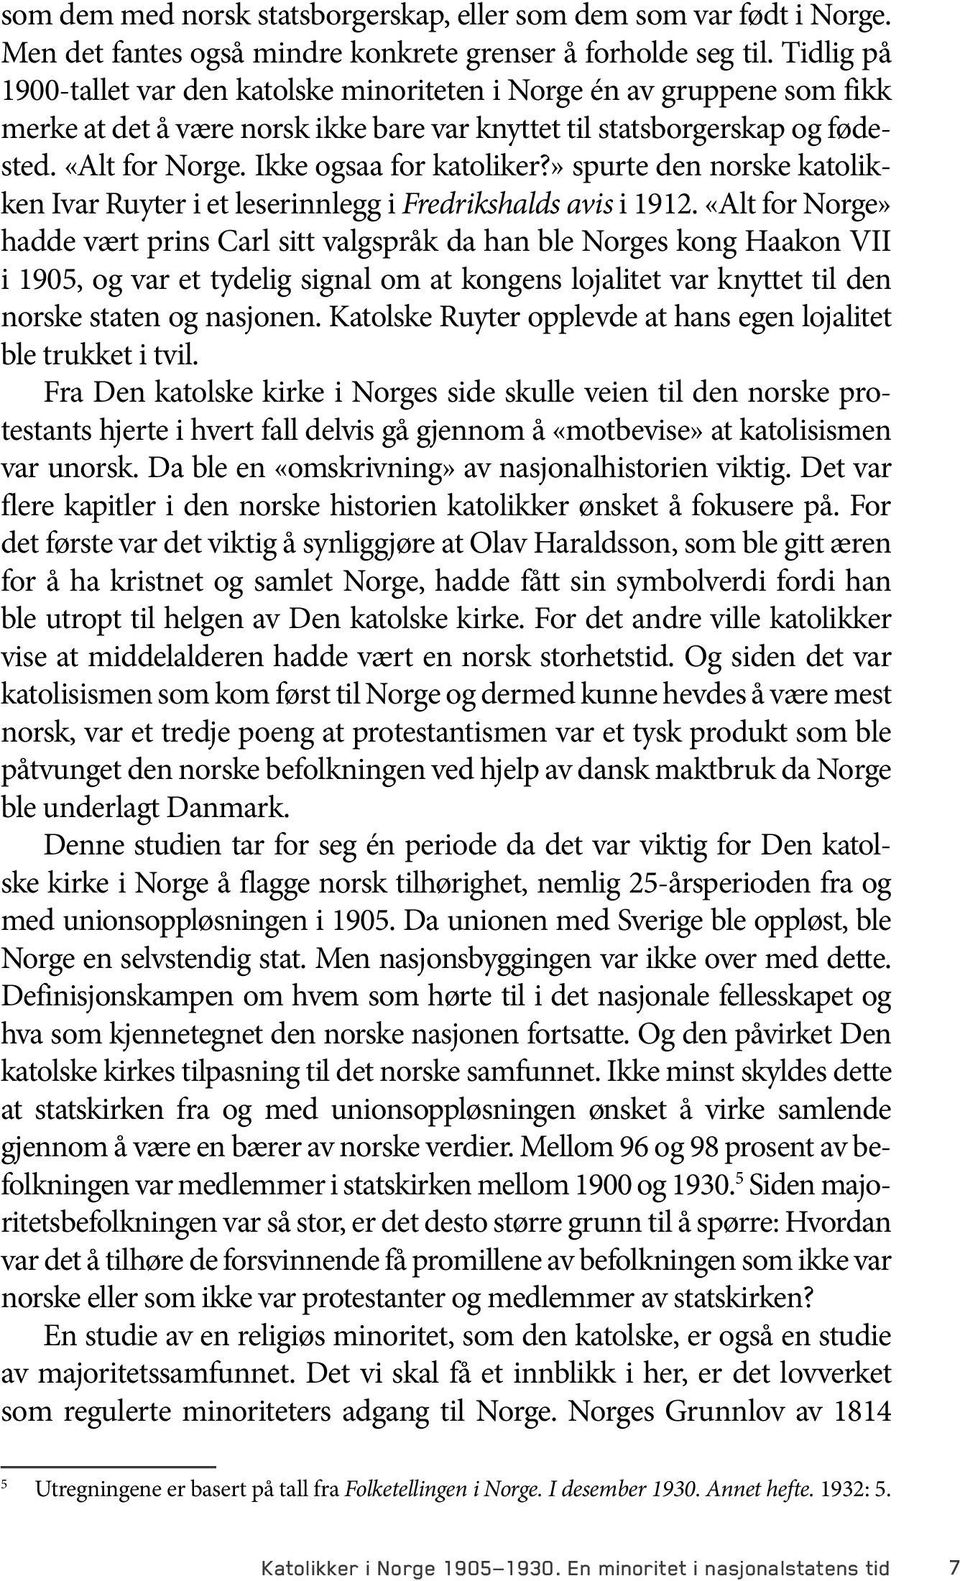 Ikke ogsaa for katoliker?» spurte den norske katolikken Ivar Ruyter i et leserinnlegg i Fredrikshalds avis i 1912.